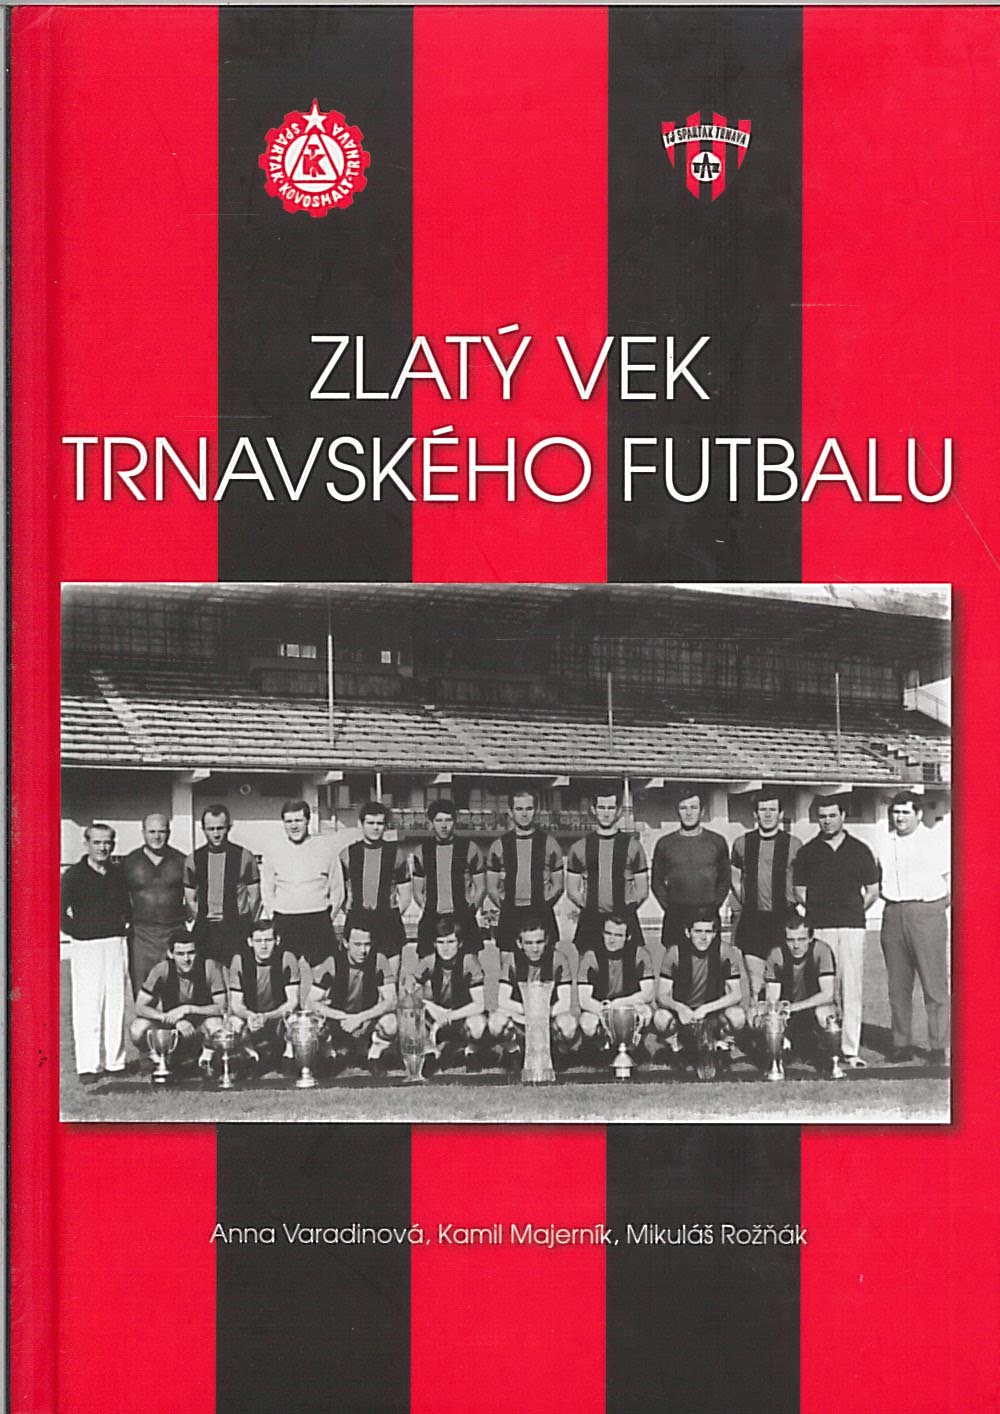 Zlatý vek trnavského futbalu (Mikuláš Rožnák, Anna Varadinová, Kamil Majerník)